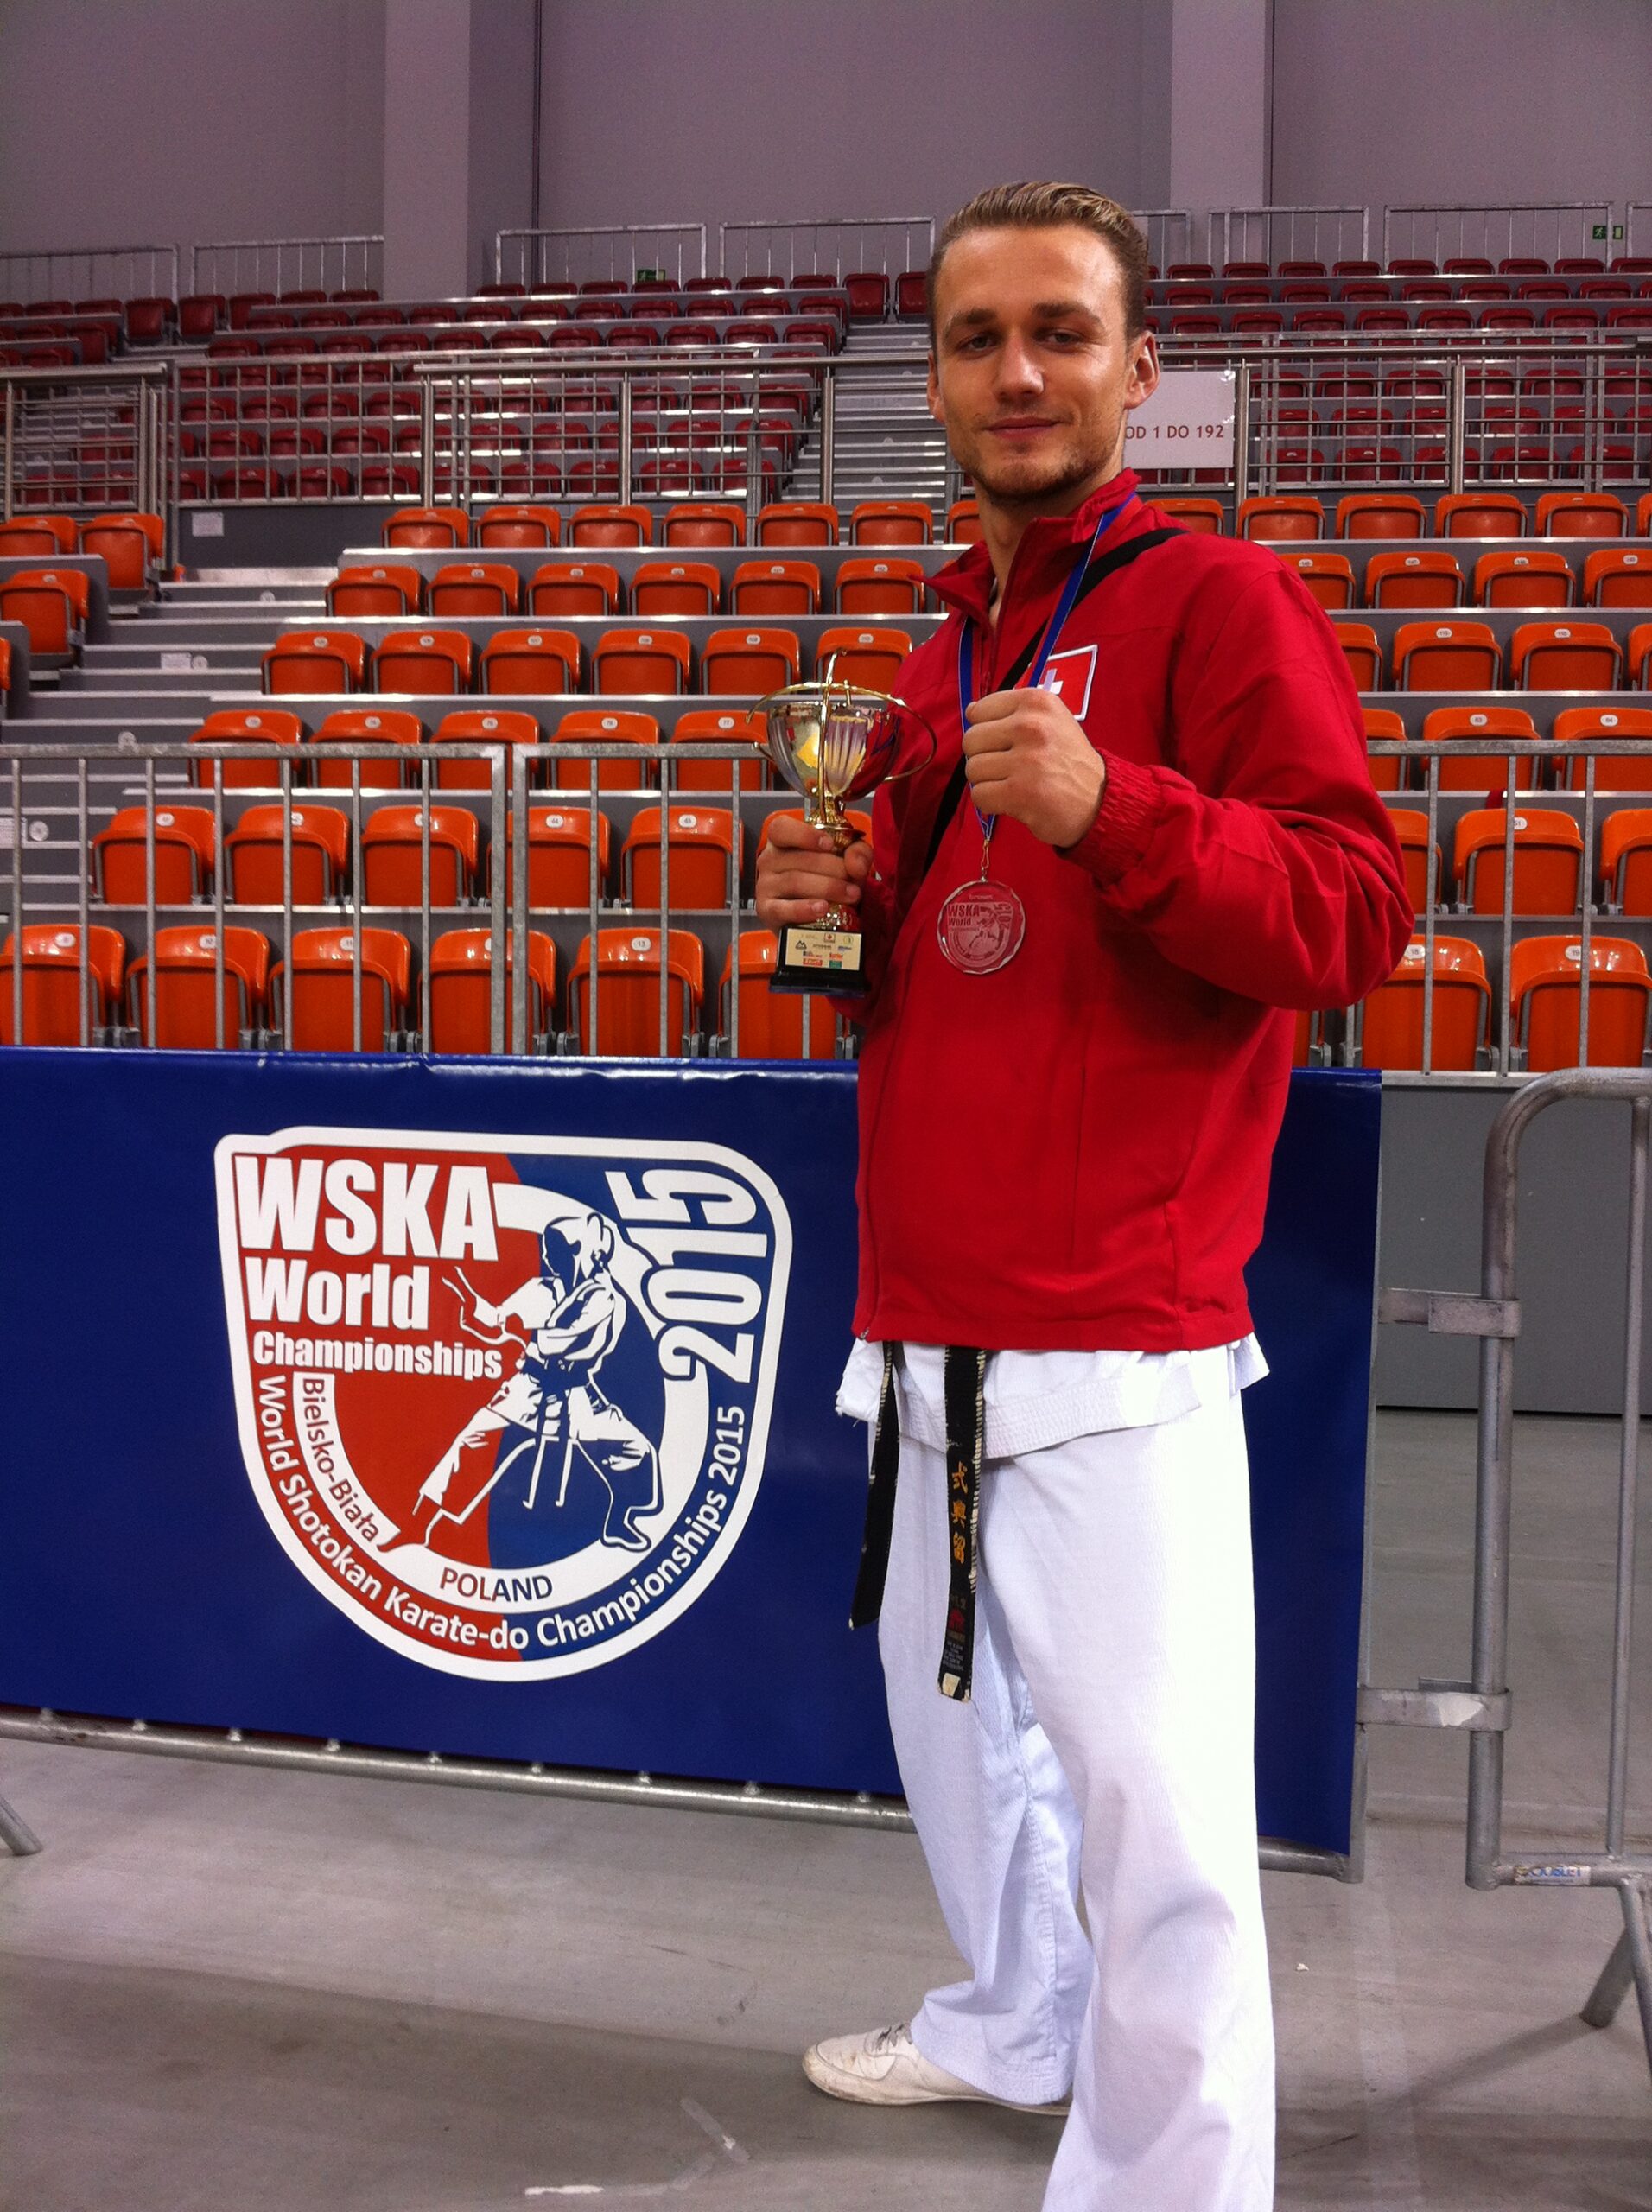 WSKA Weltcup 2015